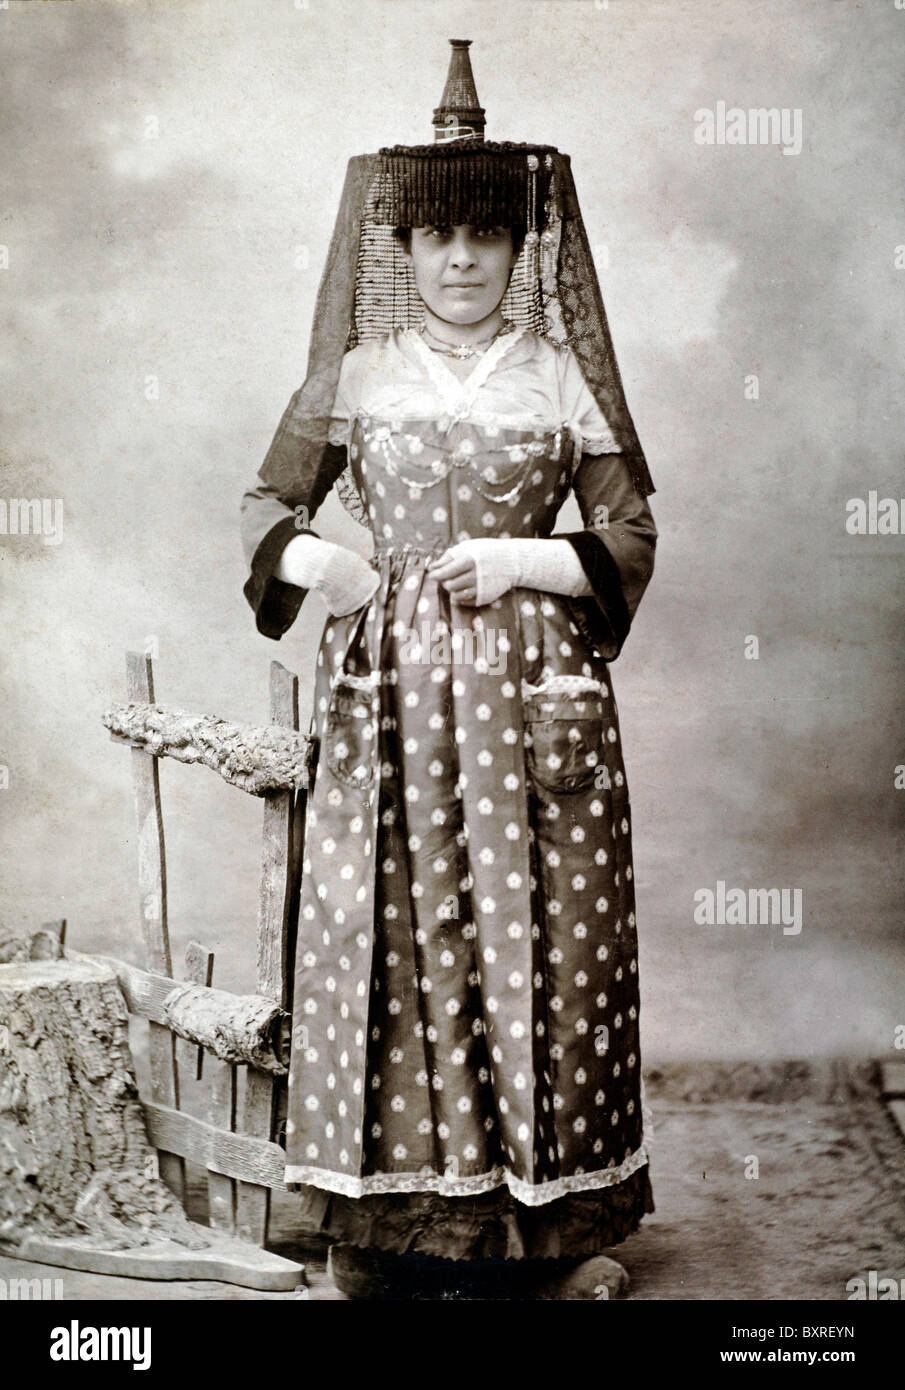 Portrait complet de la femme française en costume folklorique traditionnel ou folklorique, ou Costume folklorique de Mâcon, Bourgogne, France centrale (c1900) Banque D'Images